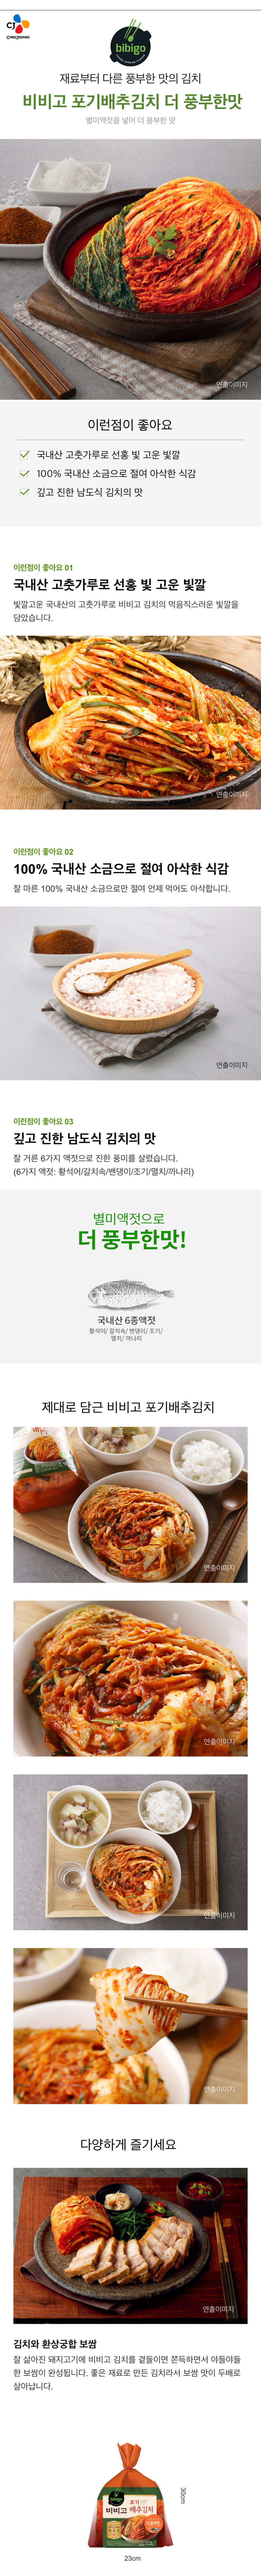 비비고-포기배추김치-더풍부한맛-33kg-1000140145351